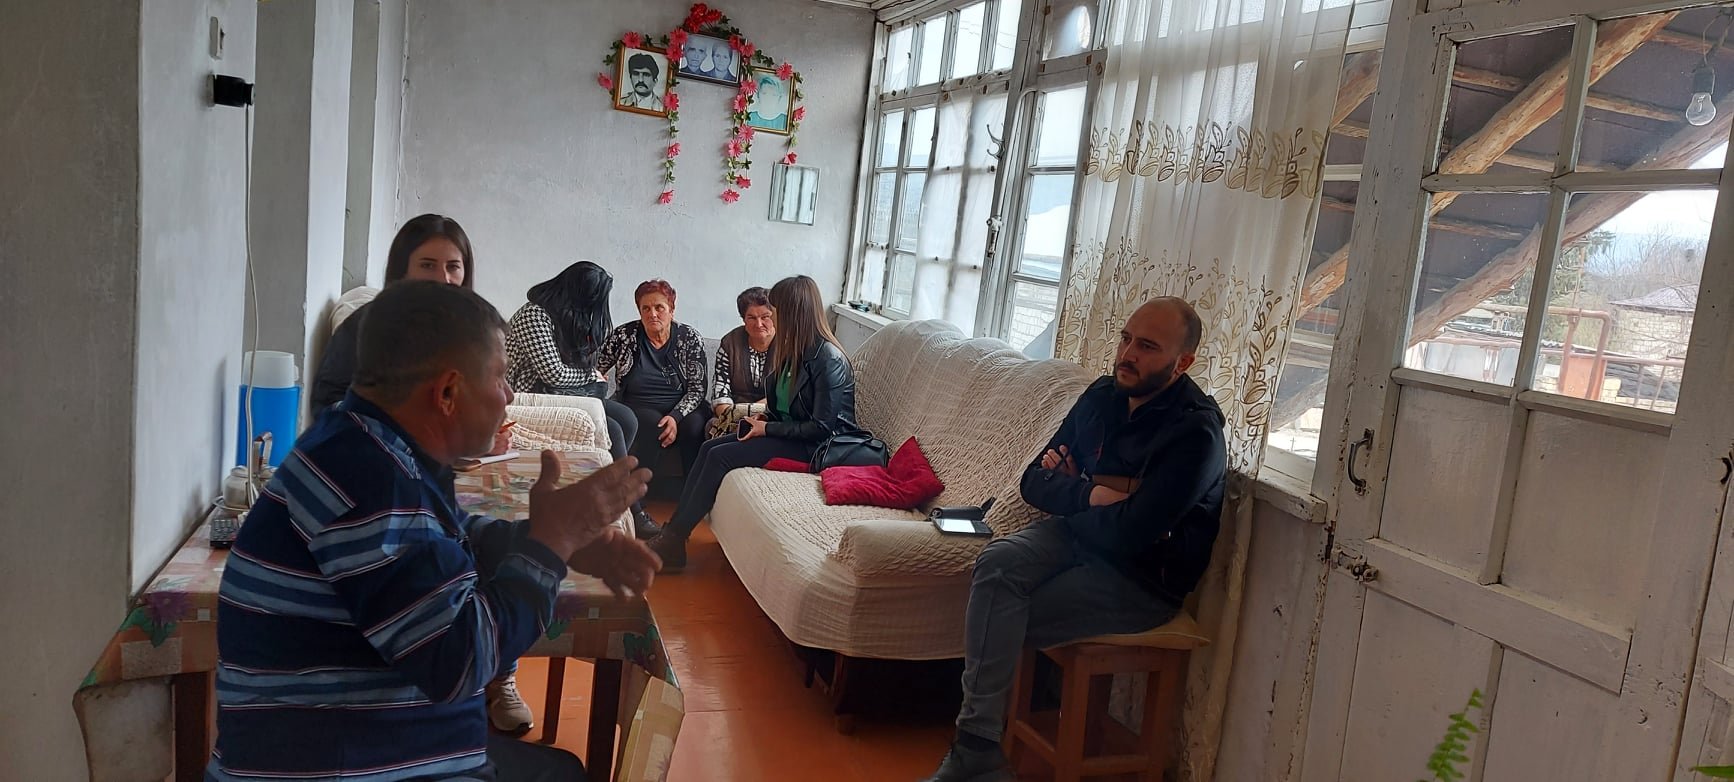 Արցախի ՄԻՊ ներկայացուցիչներն այցելել են Խրամորթ համայնքից Այգեստան գյուղում ժամանակավոր բնակություն հաստատած  տեղահանված ընտանիքներին